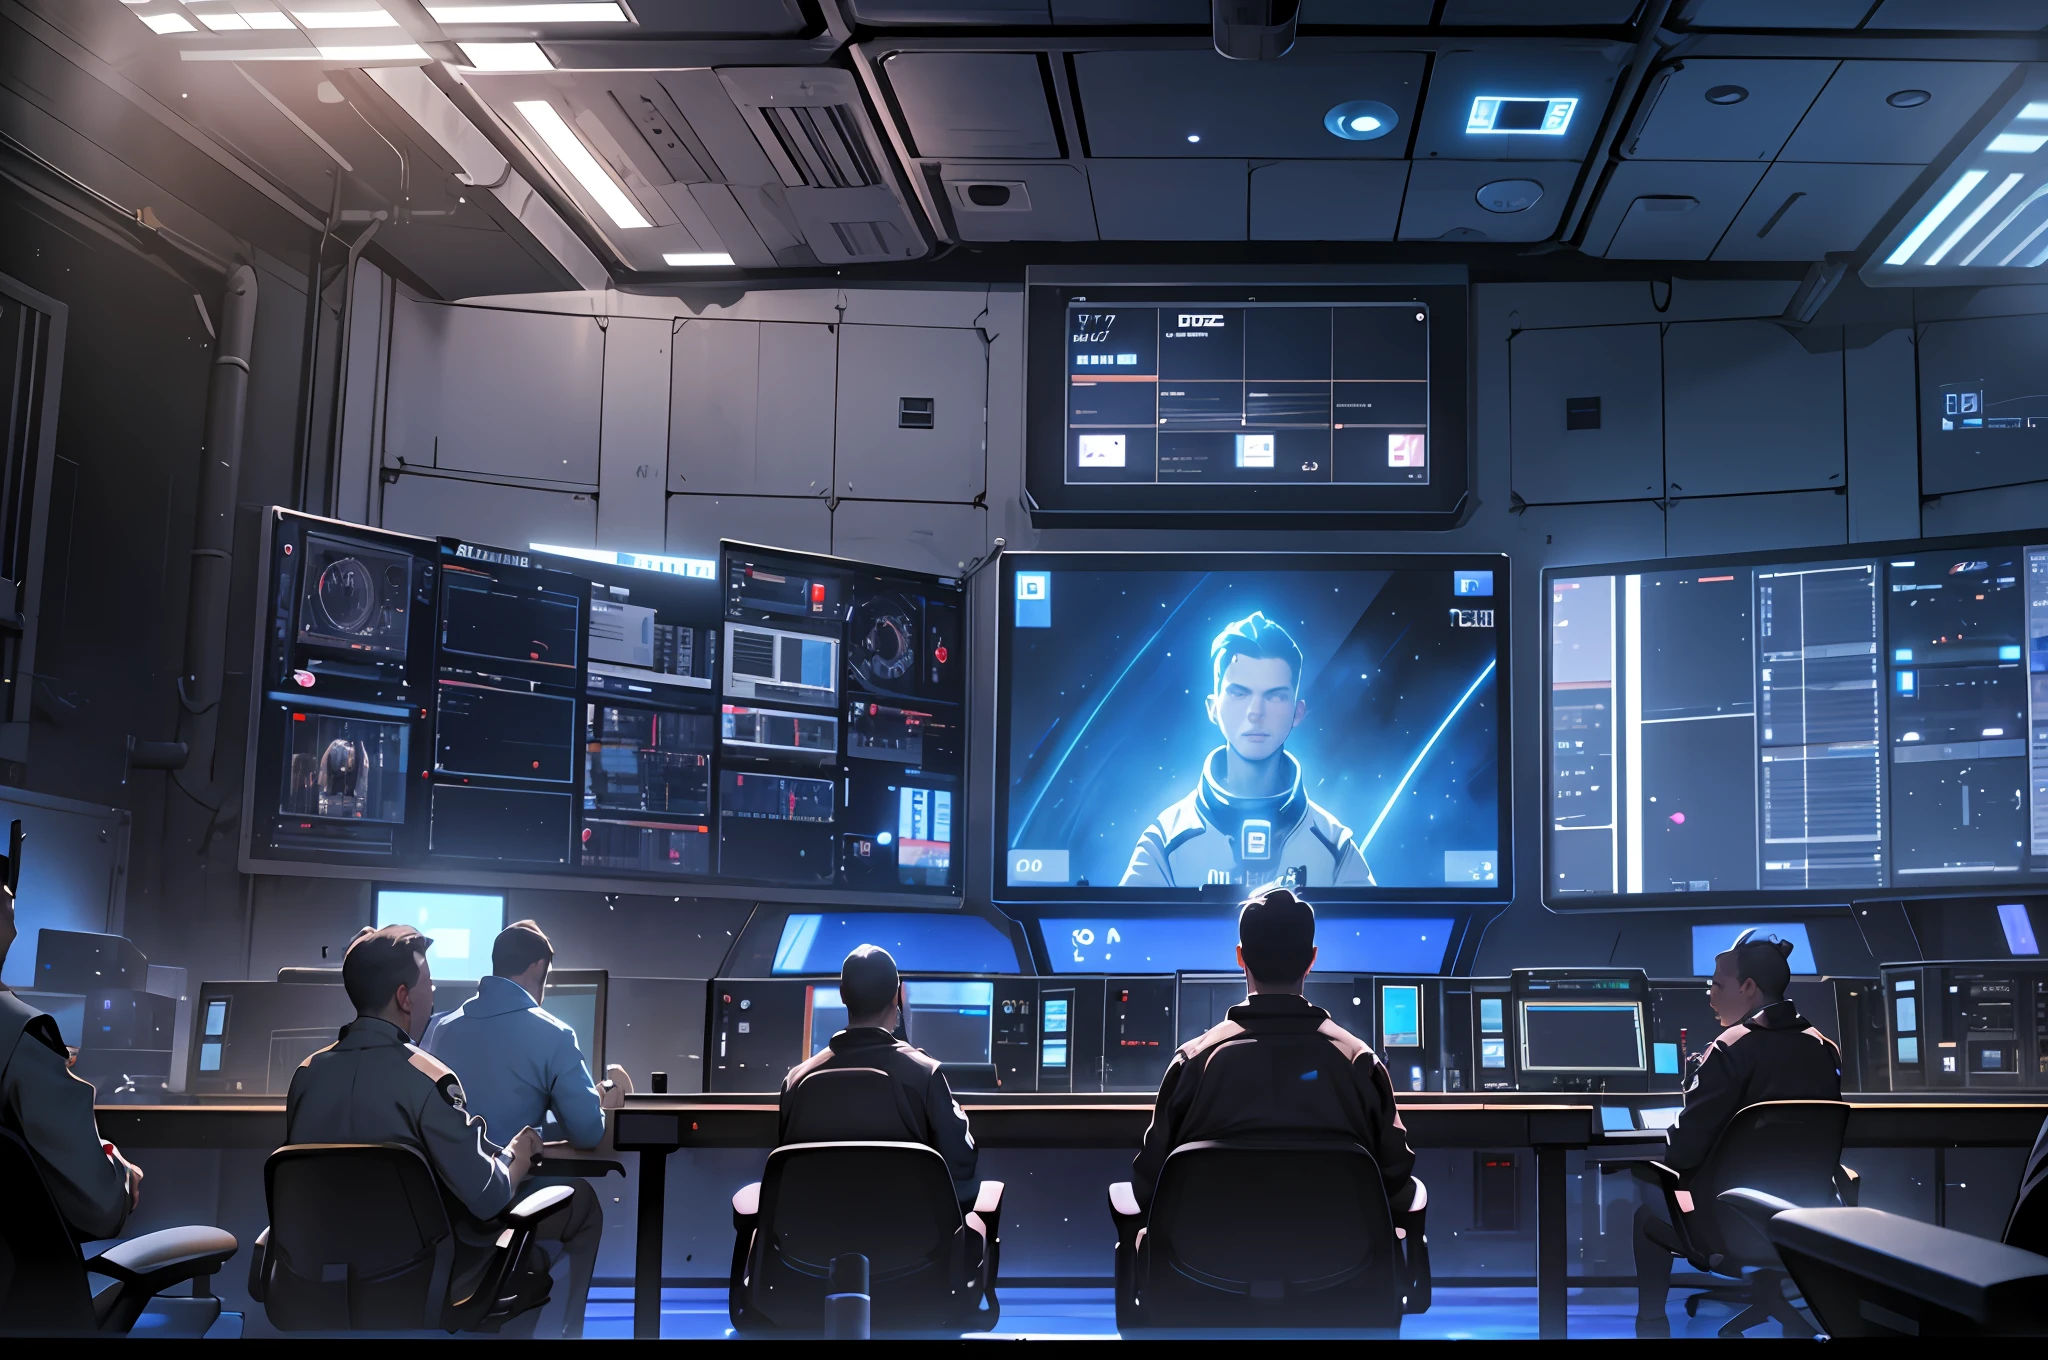 غرفة التحكم في الفضاء, قاعة التحكم, الكثير من الشاشات, شاشات مع الضوء الأزرق, الكثير من الطاقم, الجميع يصفق, الواقعية, تفاصيل عالية, الإضاءة السينمائية, إضاءة باردة, عن قرب, الواقعية, فائق الوضوح, تفاصيل عالية, تفاصيل فائقة - تلقائي - s2